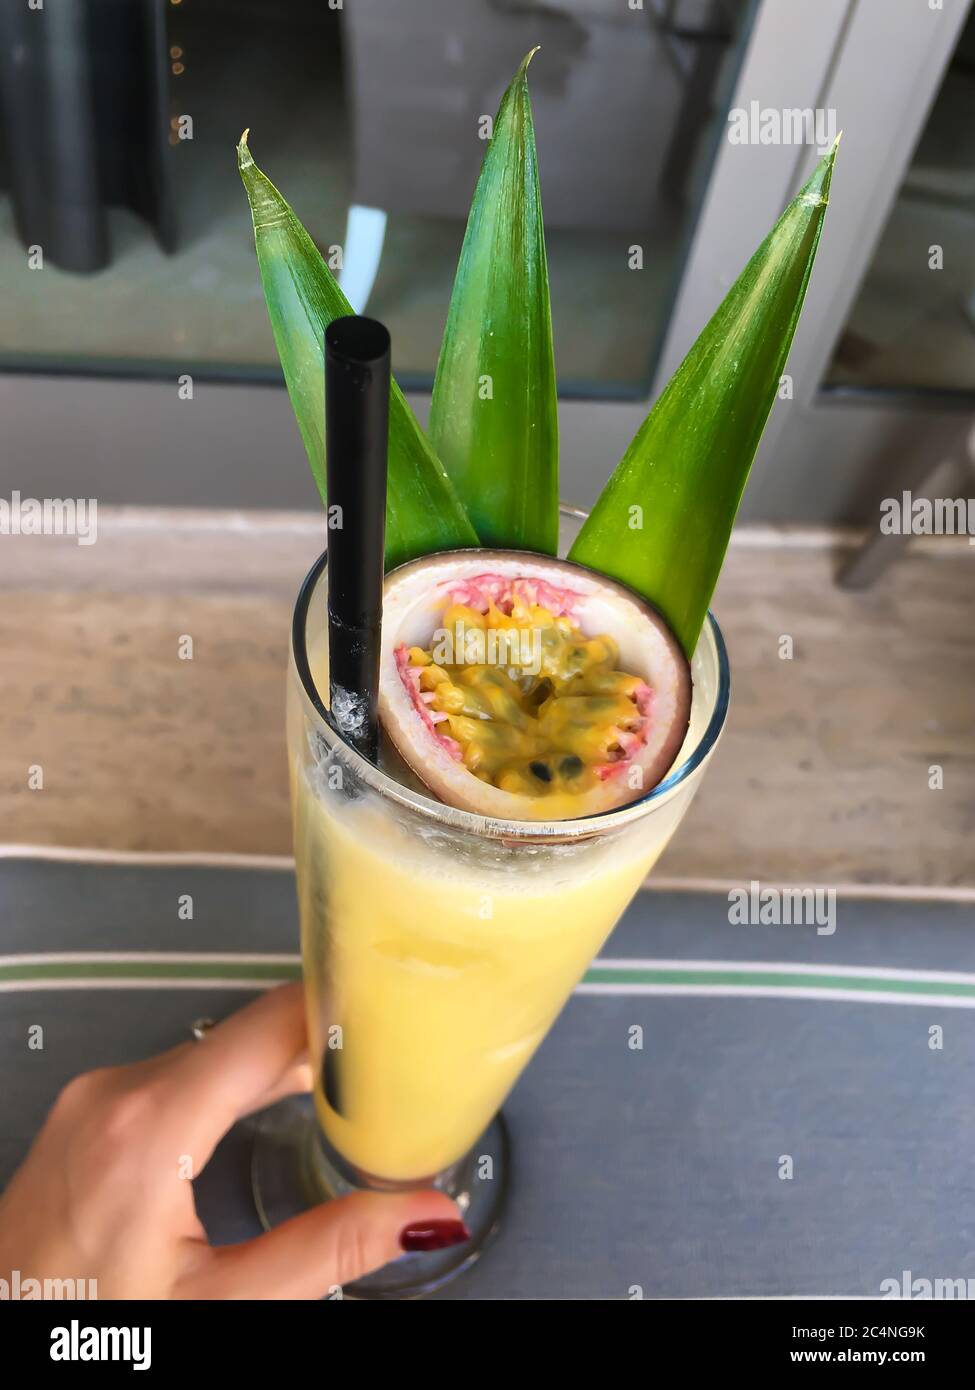 Delizioso cocktail esotico giallo rinfrescante con frutto della passione in  mano alla ragazza Foto stock - Alamy